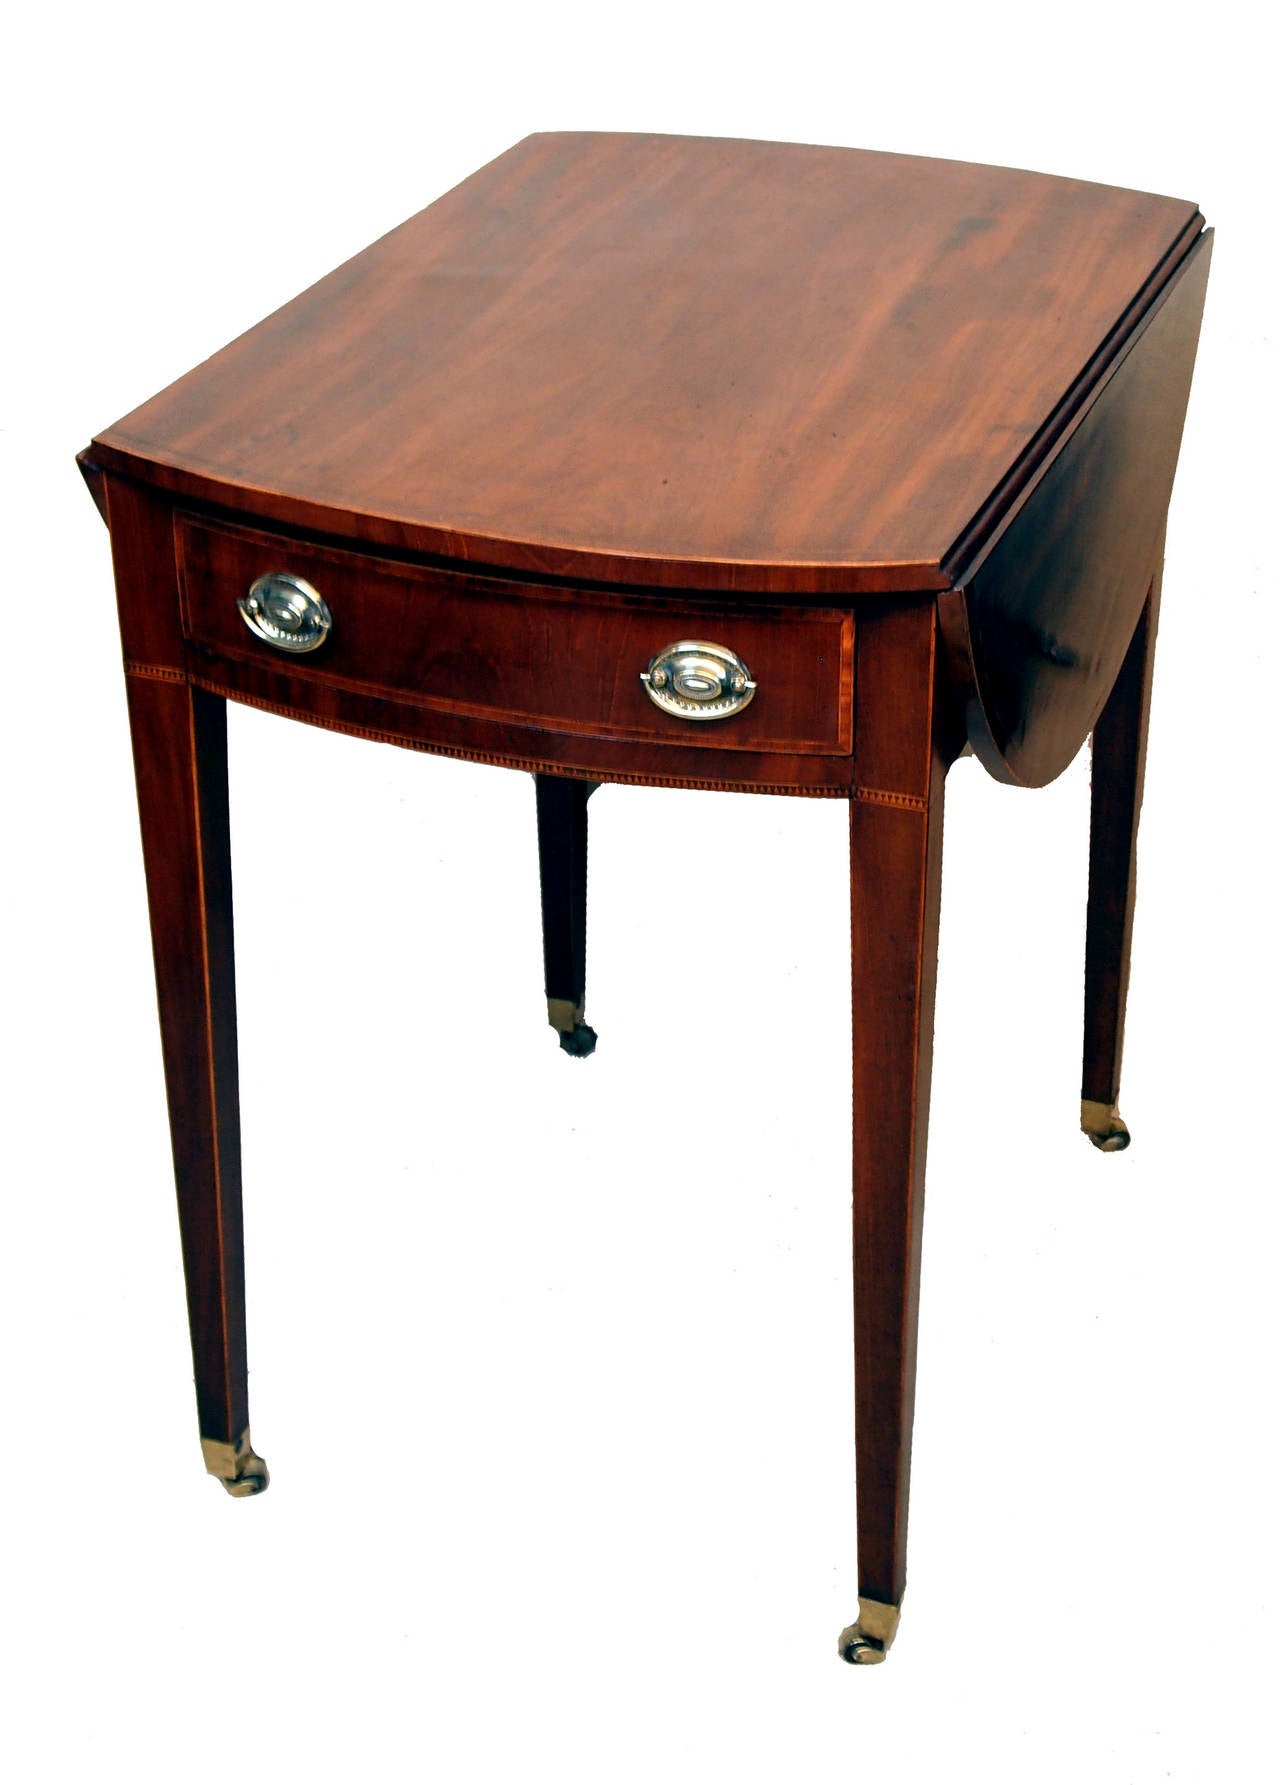 Une table Pembroke en acajou de la fin du 18ème siècle, avec des motifs bien figurés
dessus à rabat ov ovale et un tiroir en fr fr fr frise reposant sur d'élé élégants
pieds carrés effilés.

H - 28.5in.
W - 19.5in (rabats vers le bas.) 
W -